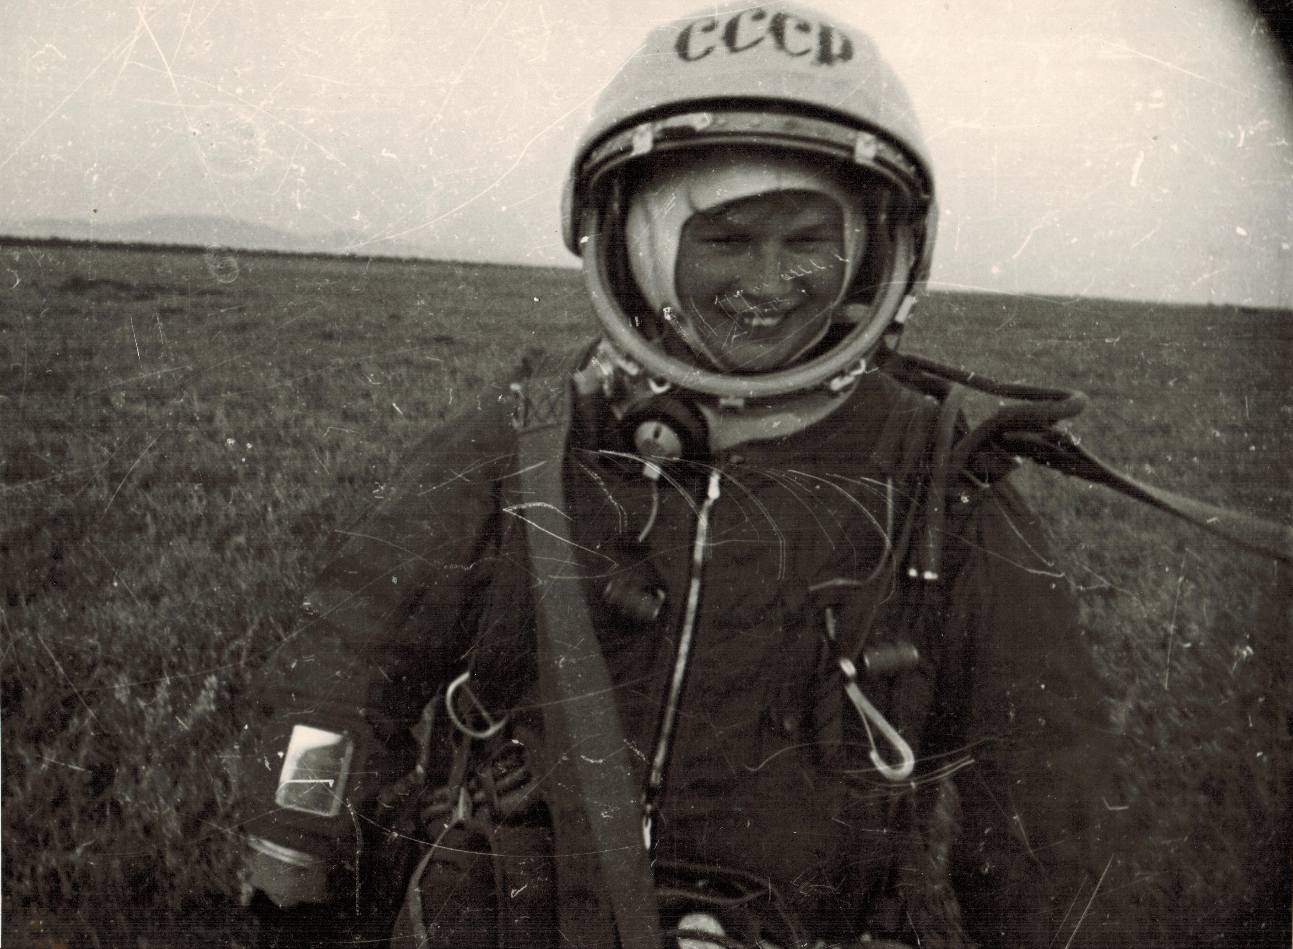 Il y a 55 ans, Valentina Terechkova - 1. De l’engagement au vol